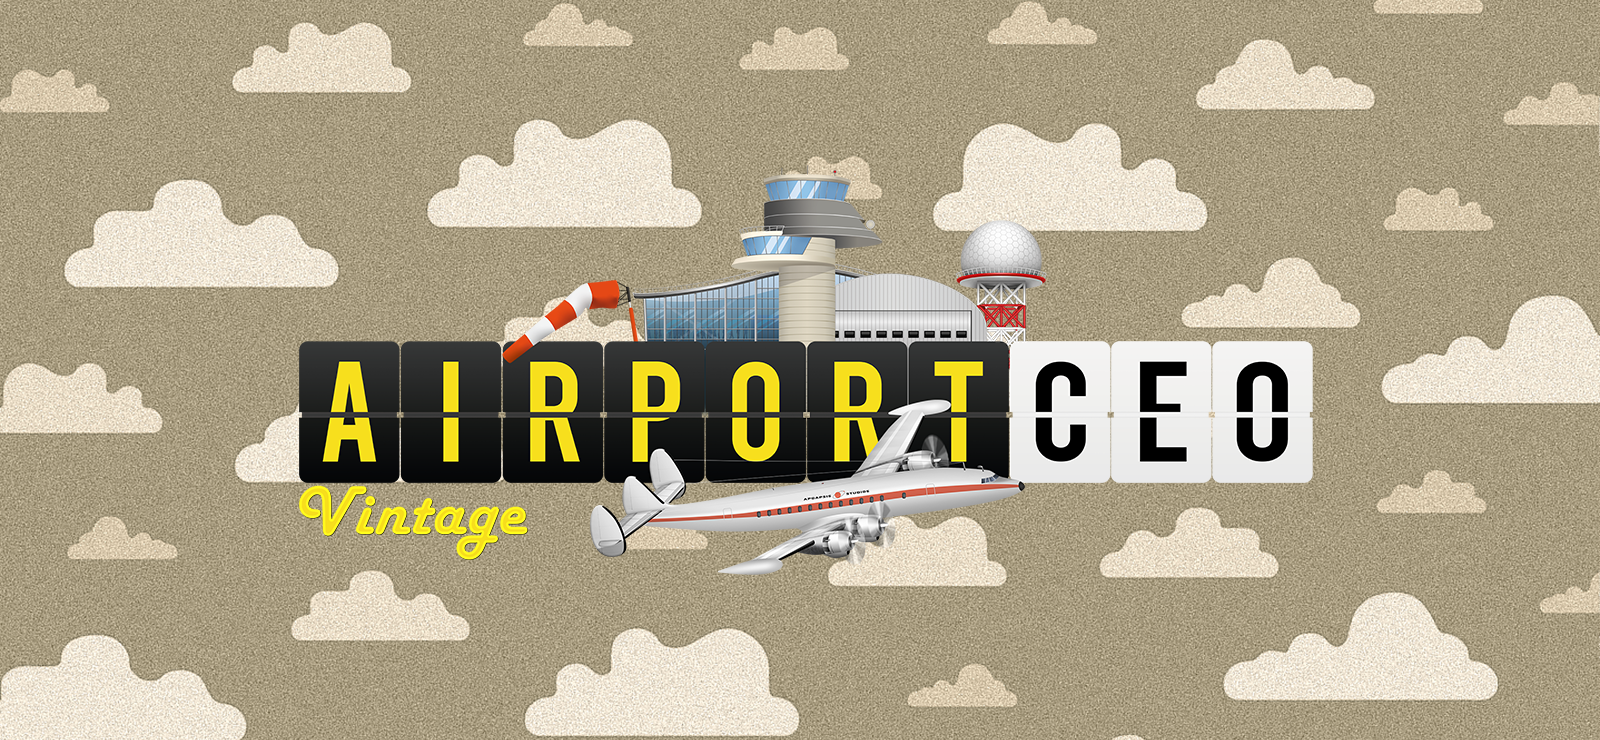 Airport CEO - Vintage